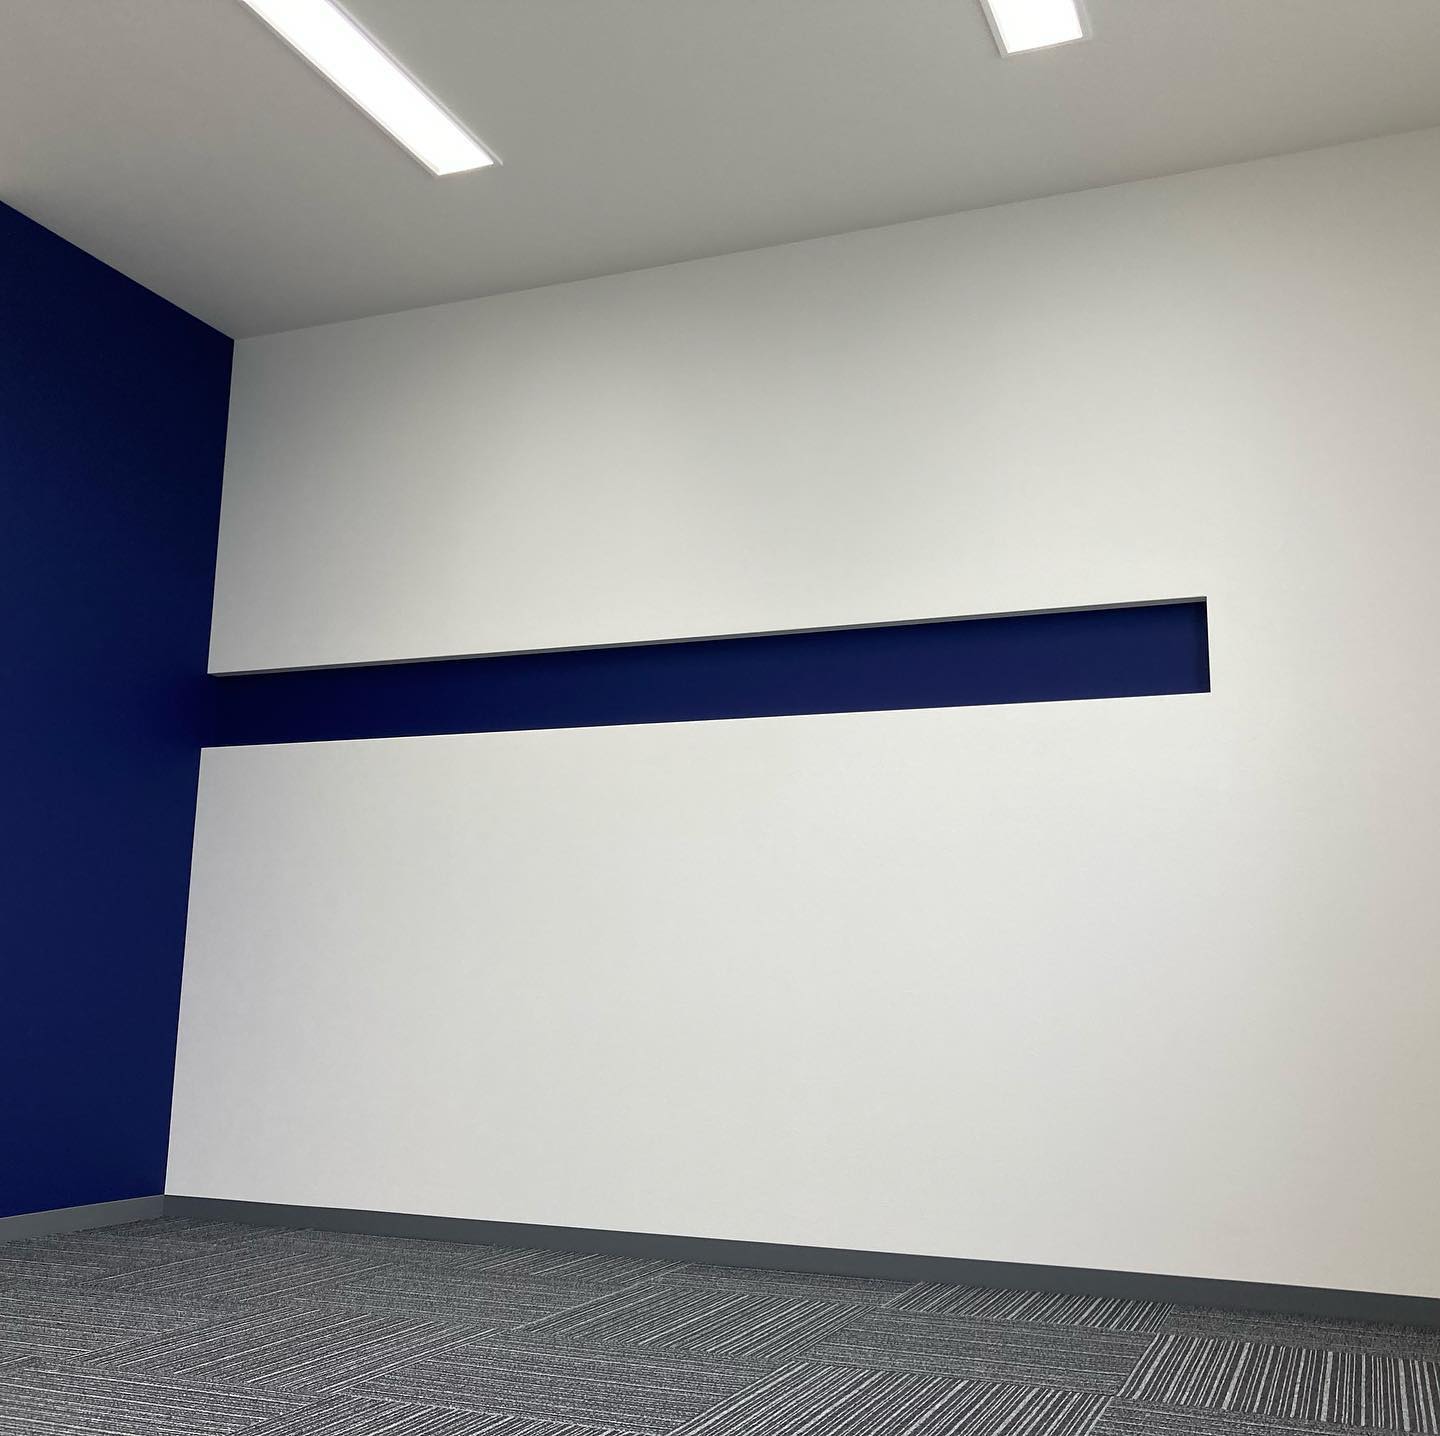 内装作業終了しました。こちらはOAフロアになっていることと、琵琶湖を眺められることから事務作業がきっと捗ります。壁にはアクセントカラーとしてブルーの壁紙を採用して軽いニッチの横ラインにしました。業者さんの丁寧な仕事で毎度助けられます。#archiworks #アーキワークス #設計事務所 #高島市 #建築家と建てる家 #事務スペース #oaフロア #フクビ #アクセントカラー #壁紙 #リリカラ #フロアタイル #サンゲツ